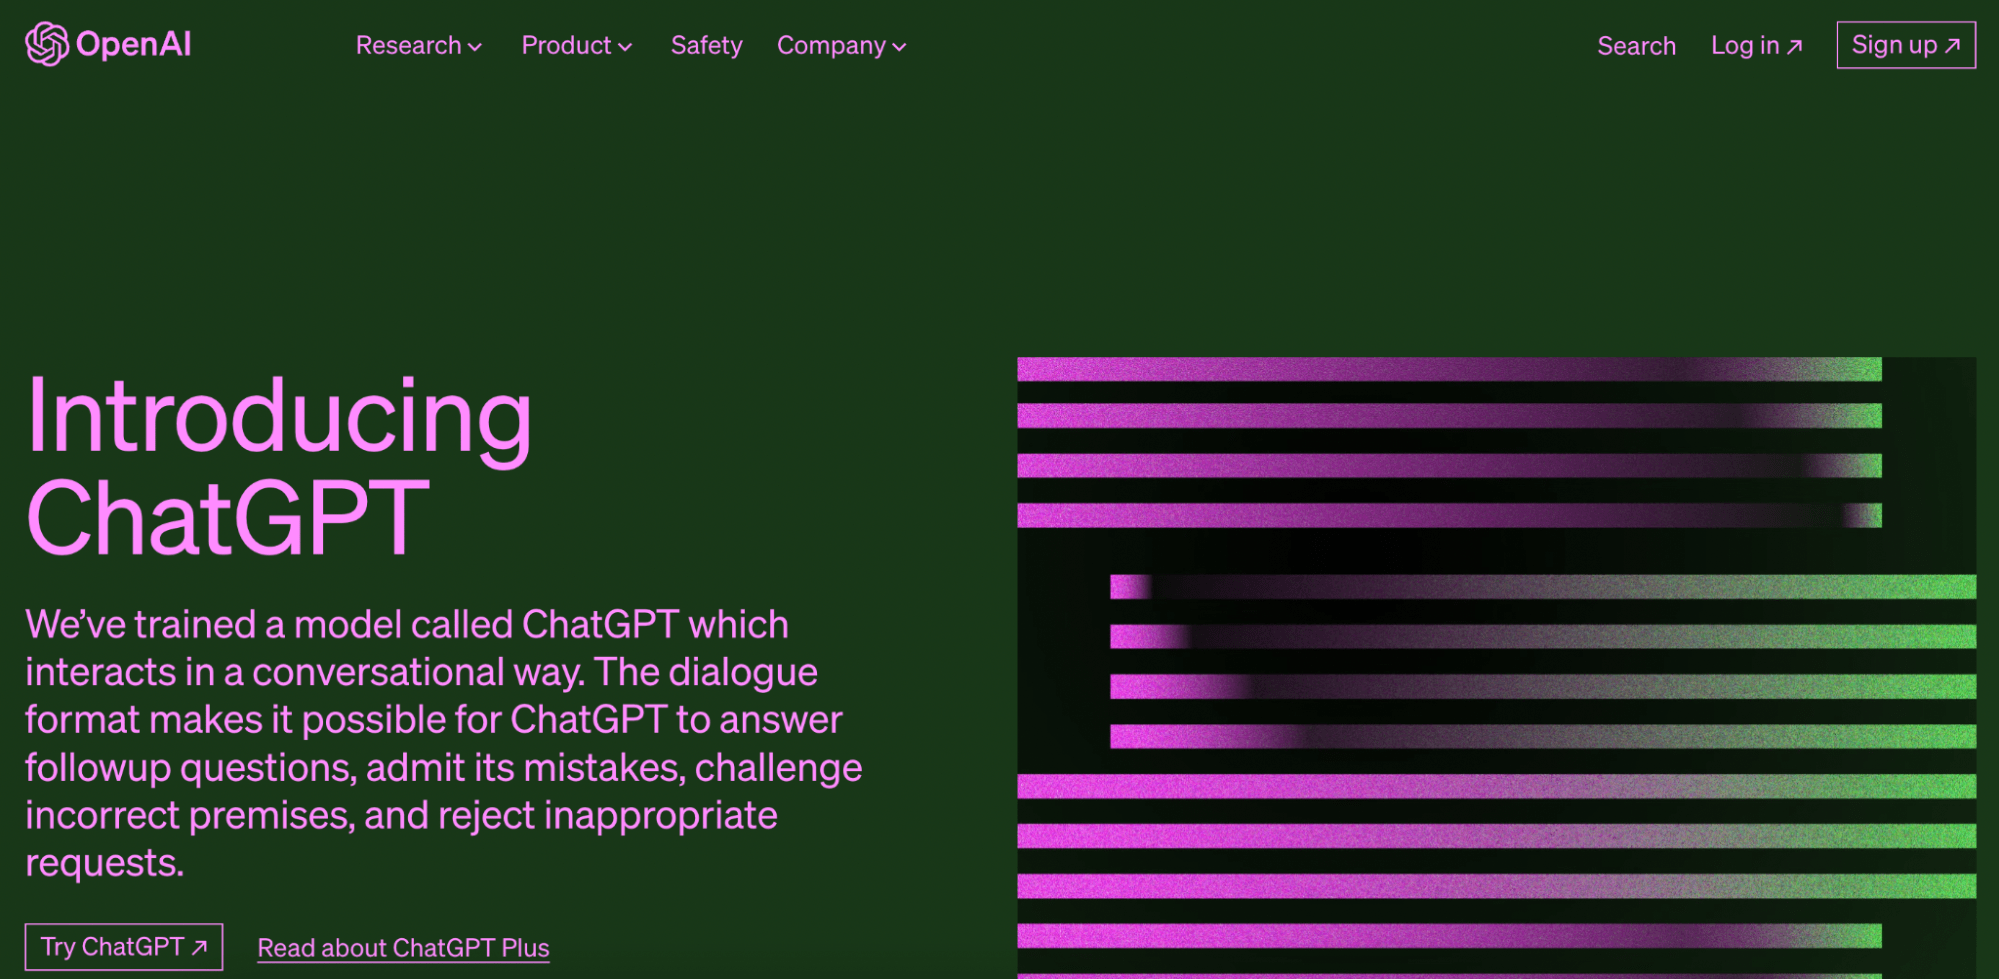 ChatGPT homepage